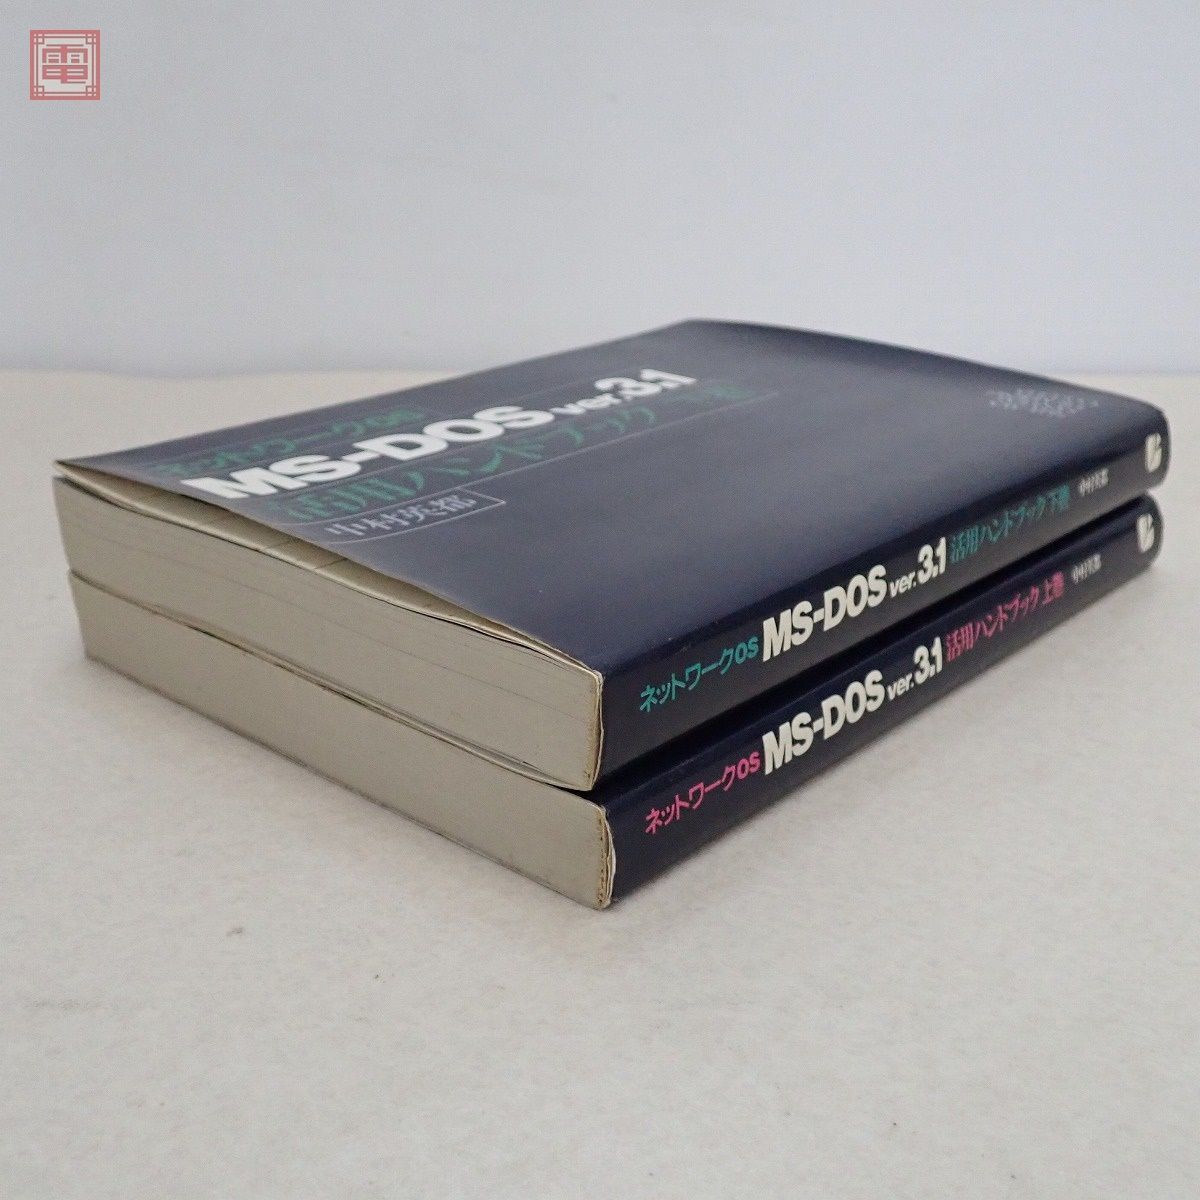 書籍 ネットワークOS MS-DOS ver.3.1 上巻/下巻 中村英都 まとめて2冊セット 秀和システム SHUWA SYSTEM【20_画像10